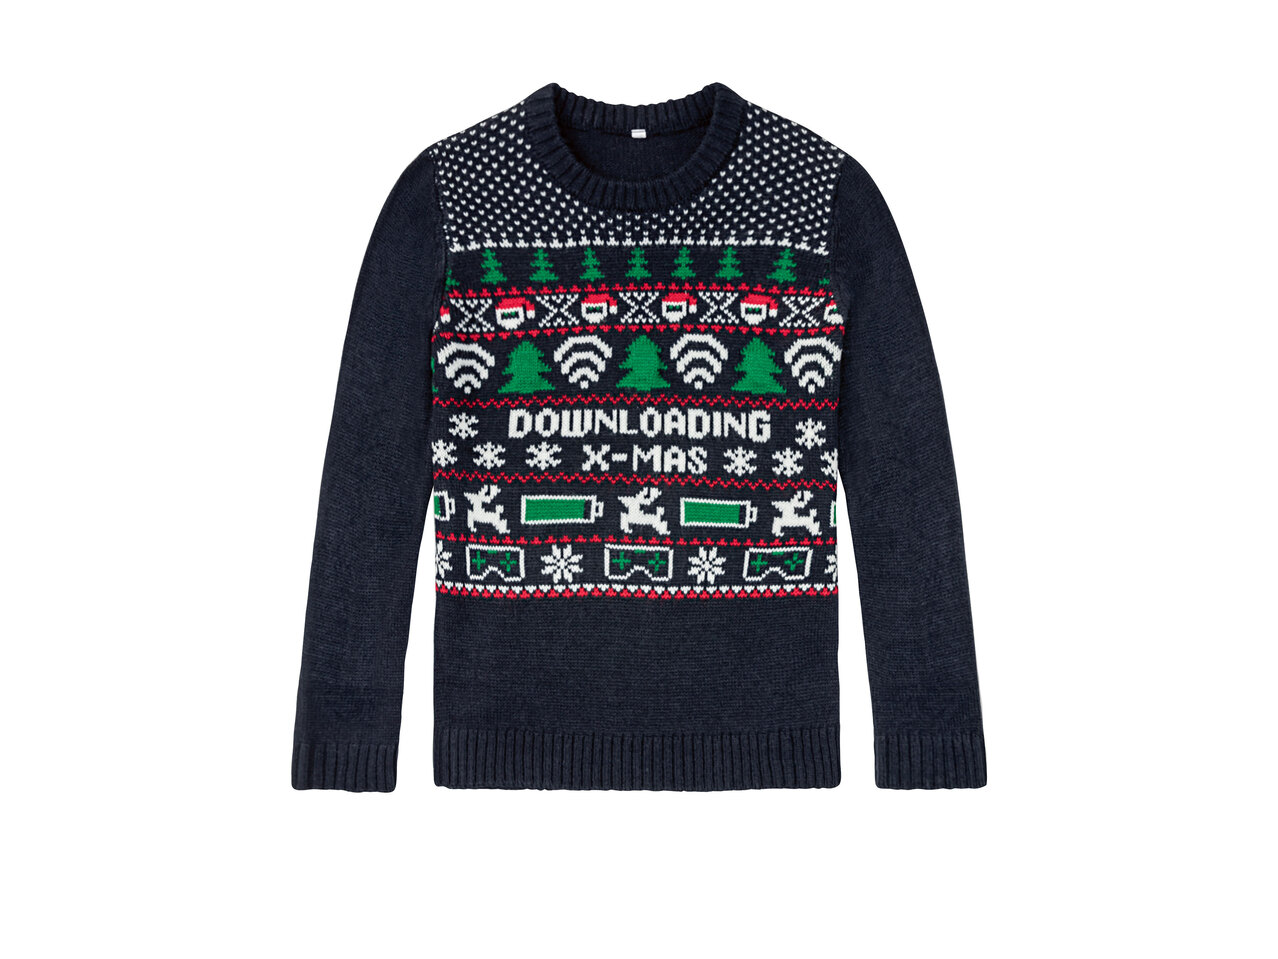 PEPPERTS® Sweter świąteczny z efektem świetlnym , cena 39,99 PLN 
PEPPERTS® ...